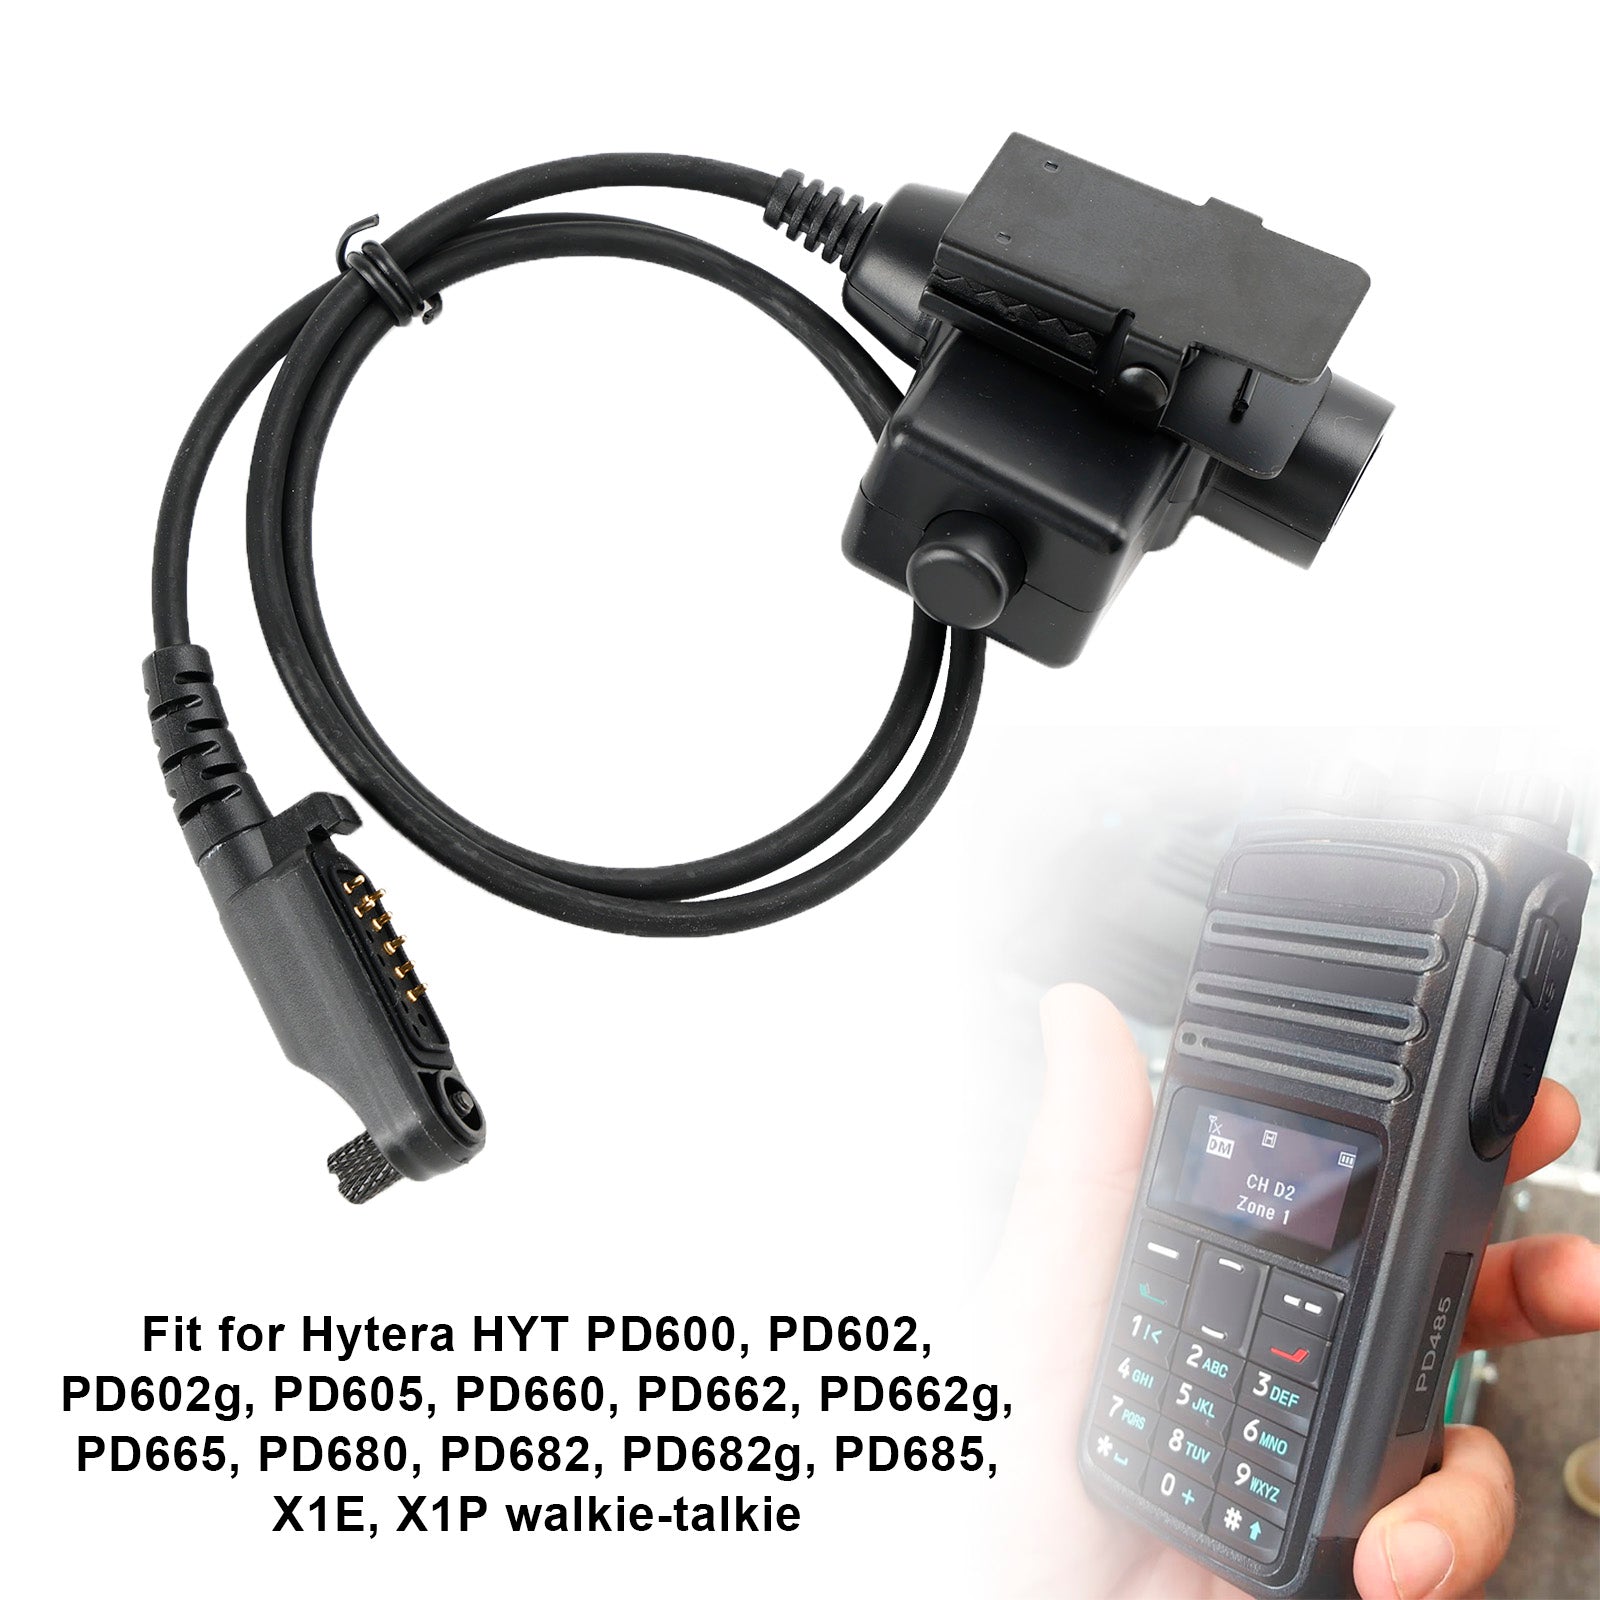 X1E/PD680-U94 PTT per Hytera HYT PD680 PD682 PD682g PD685 X1E X1P walkie-talkie